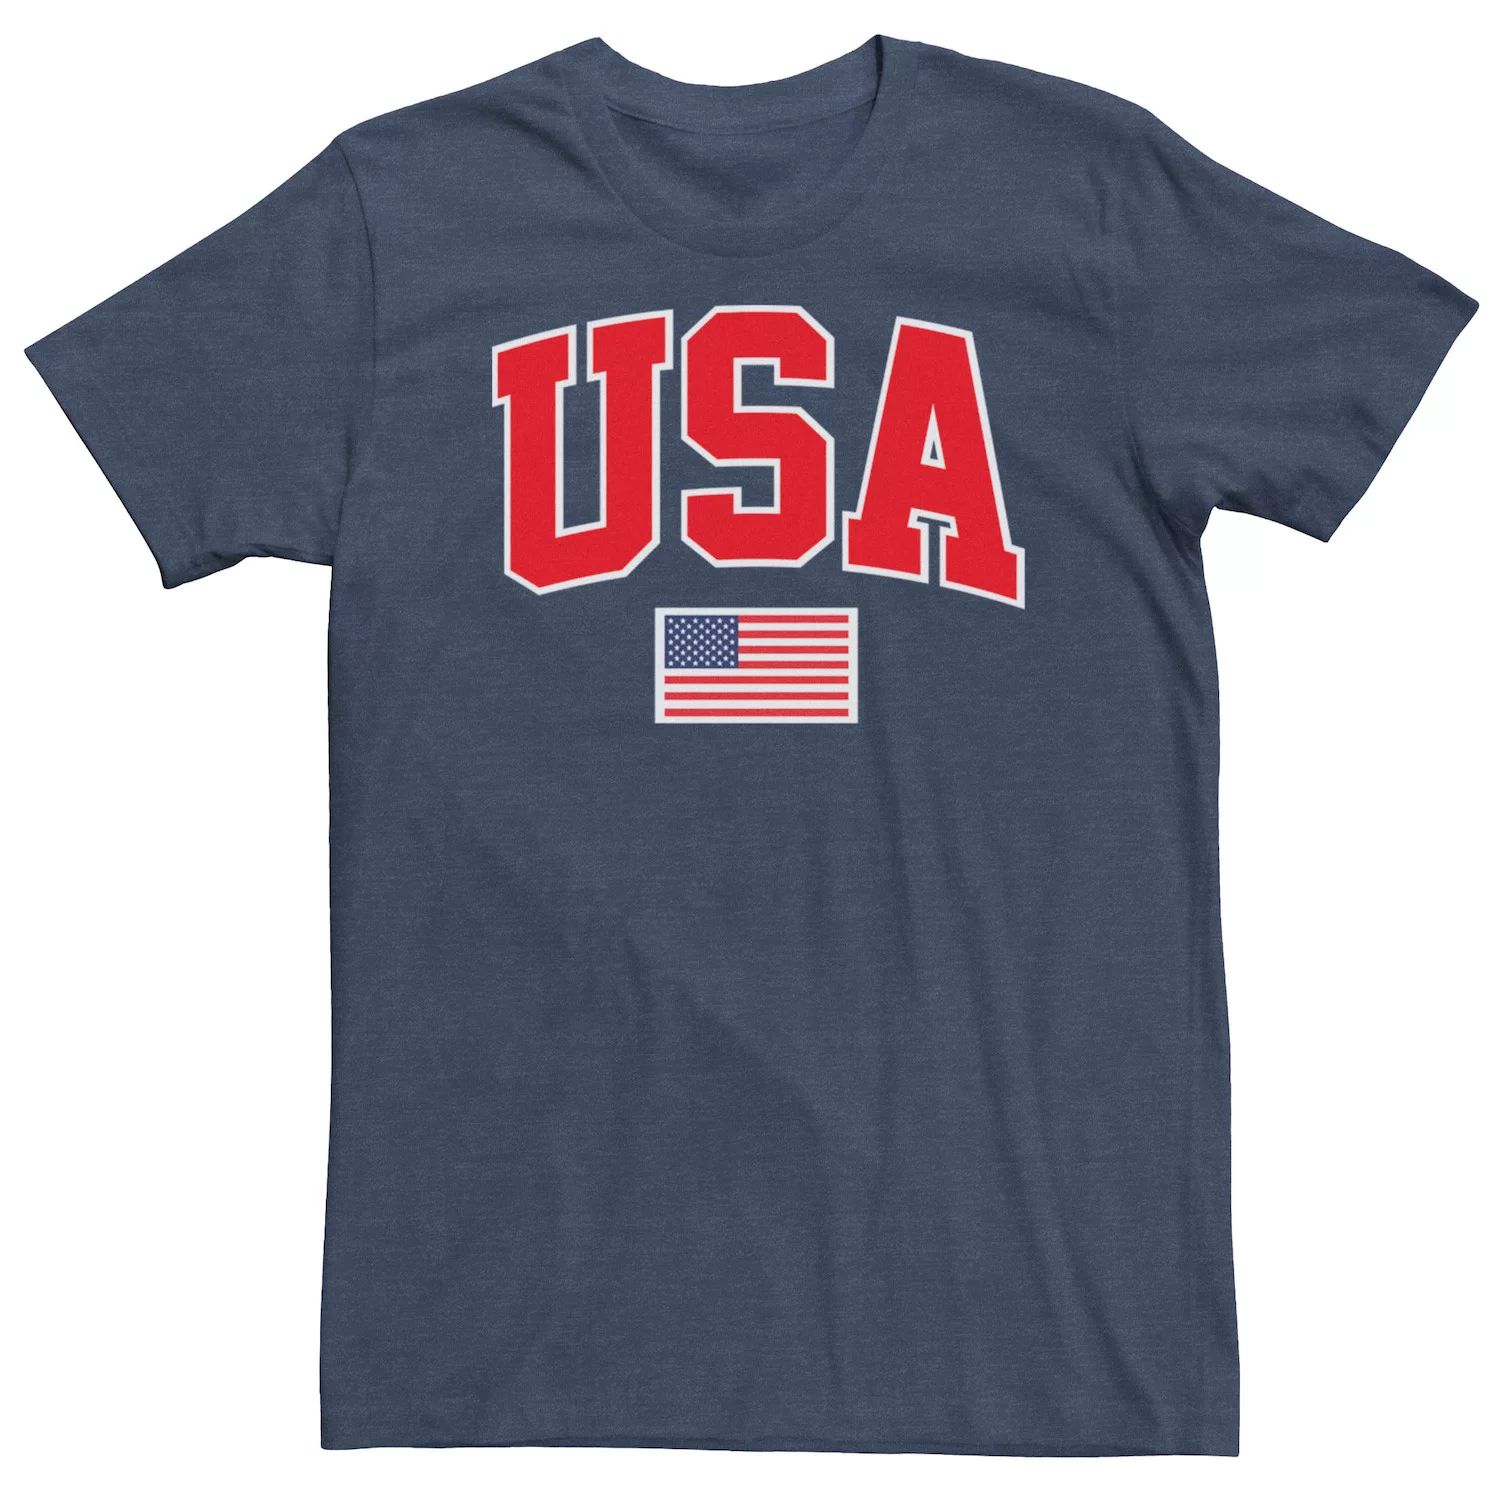 Мужская футболка США с американским флагом Licensed Character